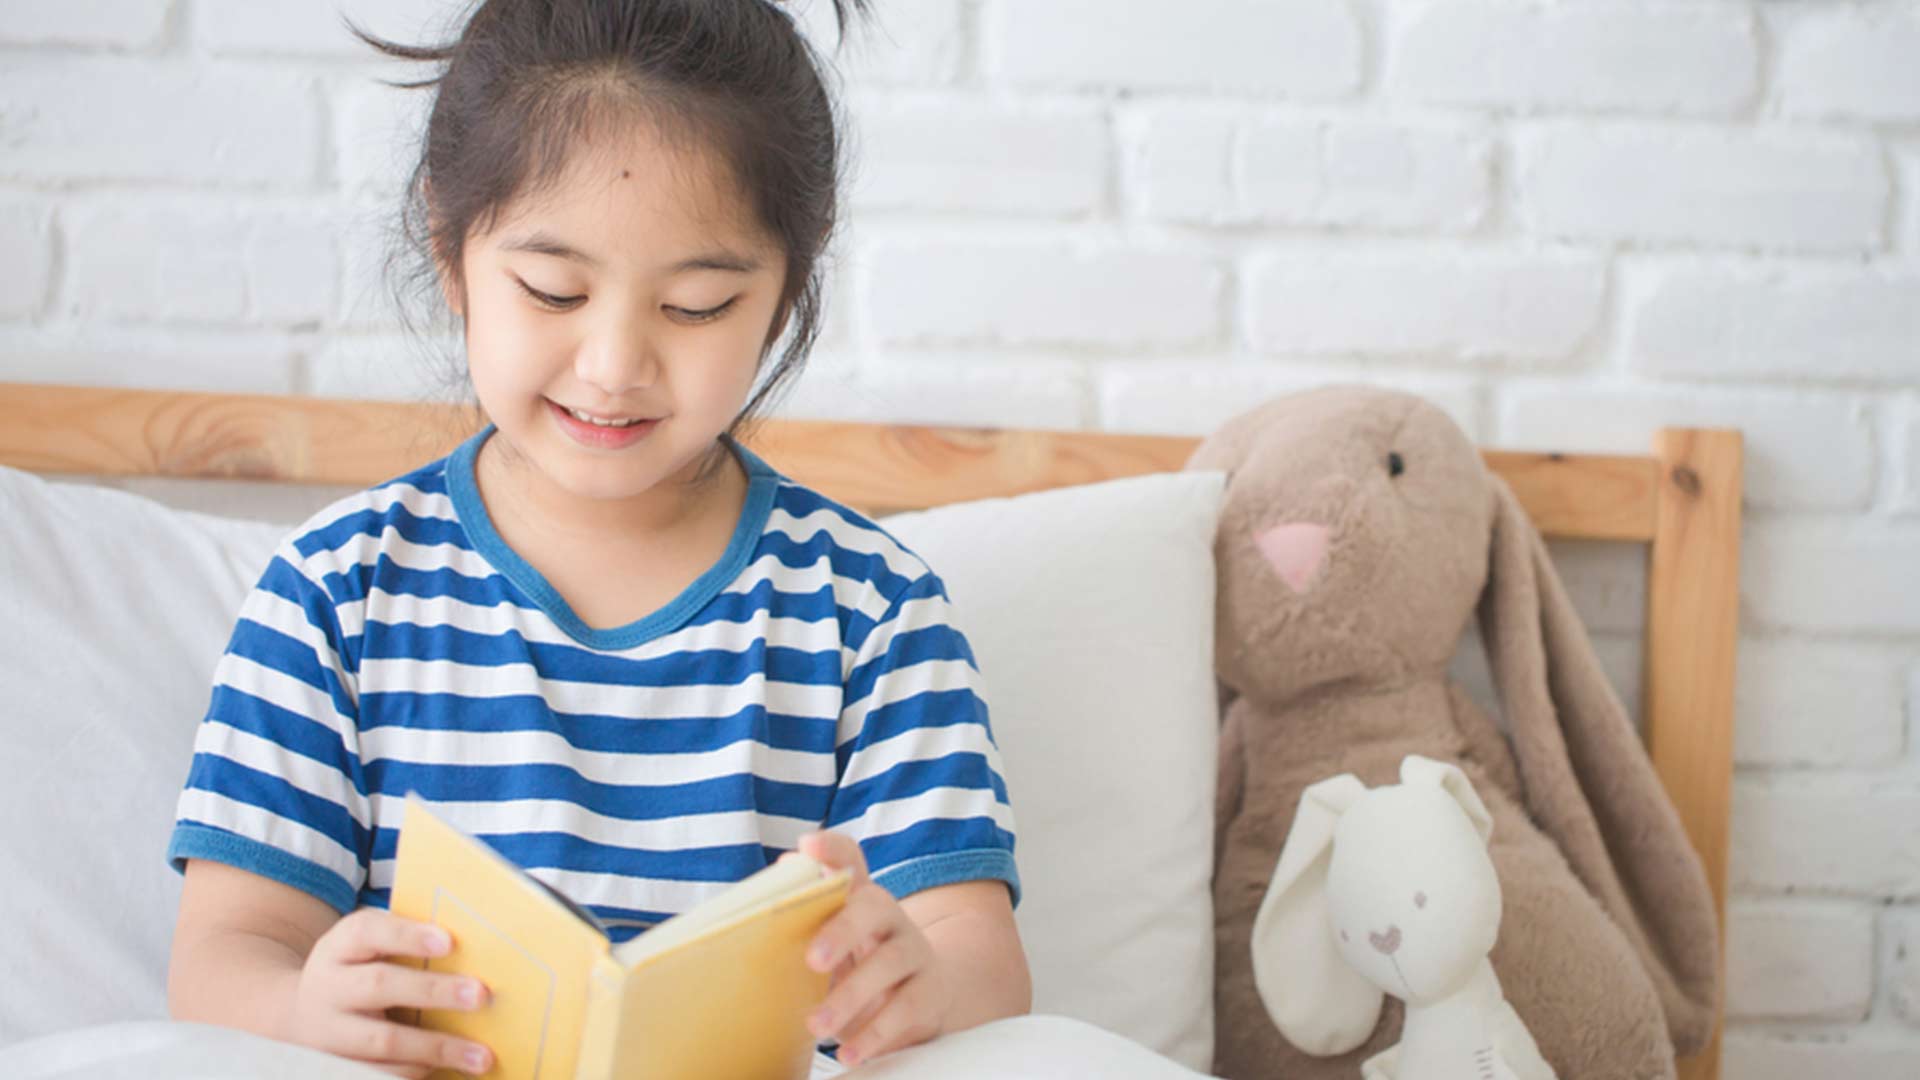 Bingung Cara Mengajari Anak Membaca Ini Tips Triknya Cussons Kids Indonesia